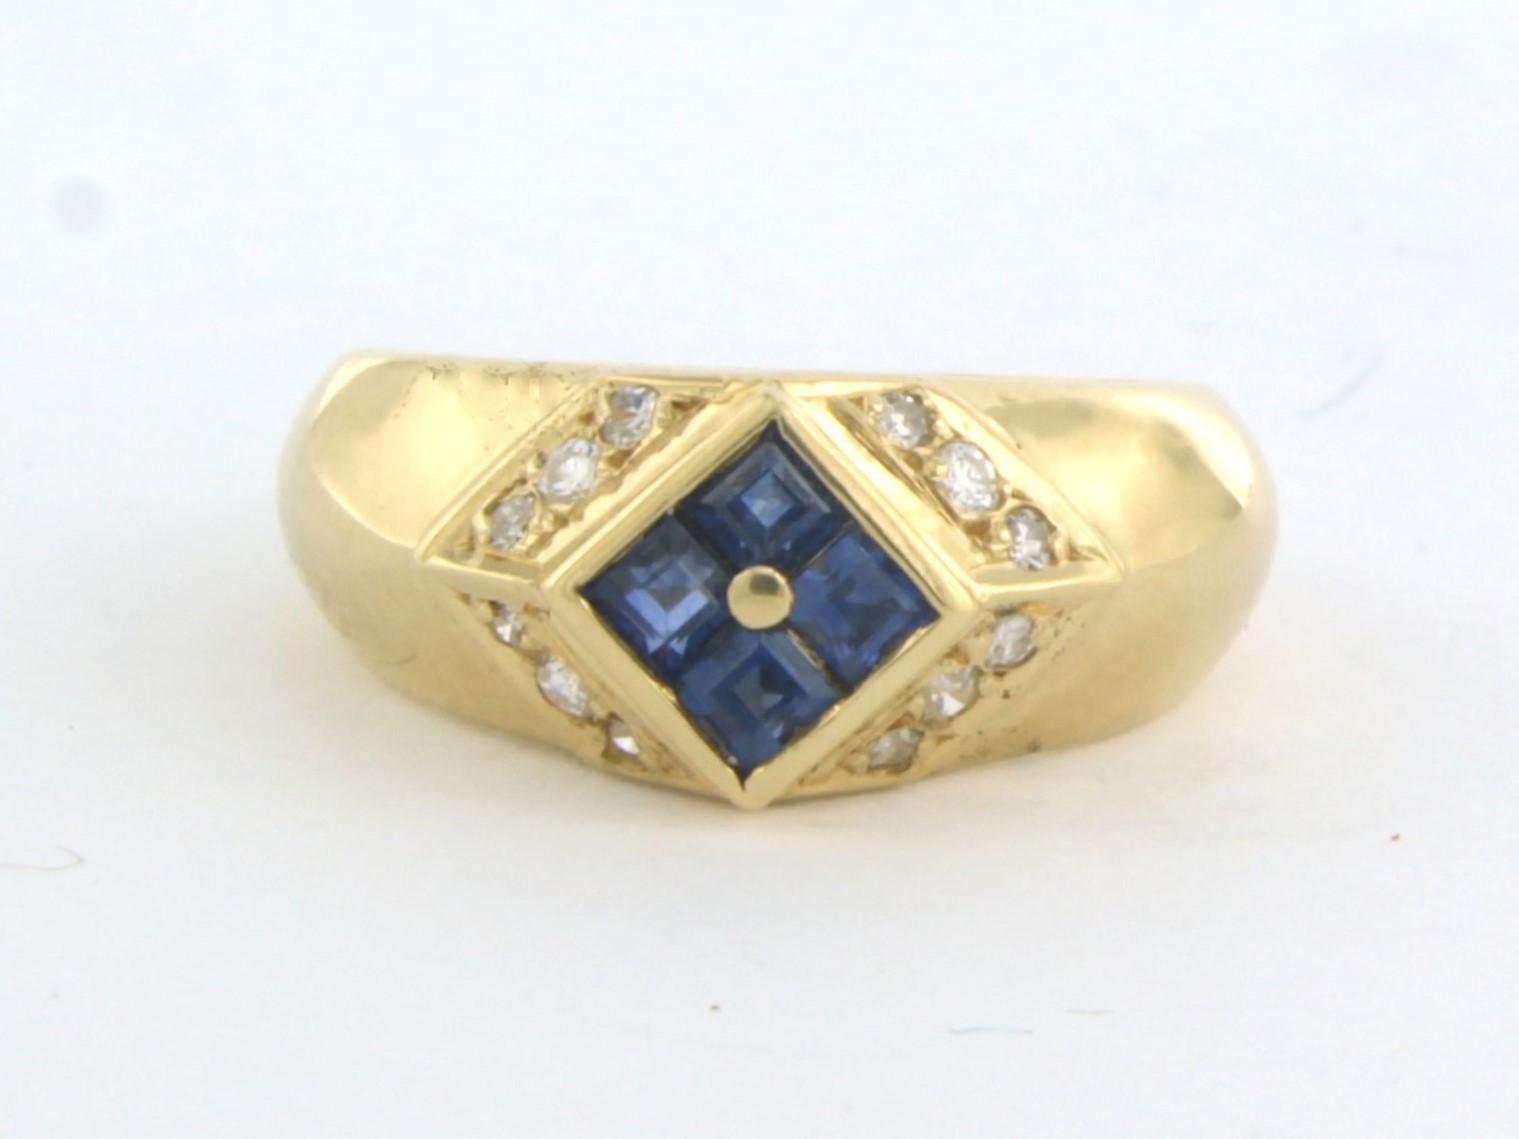 Bague en or jaune 18 carats sertie d'un saphir et d'un diamant brillant et taille unique 0.18 ct - F/G - SI - taille de bague U.S. 5.5 - EU. 16.25(51)

description détaillée :

Le haut de l'anneau a une largeur de 8.6 mm.

poids : 4,9